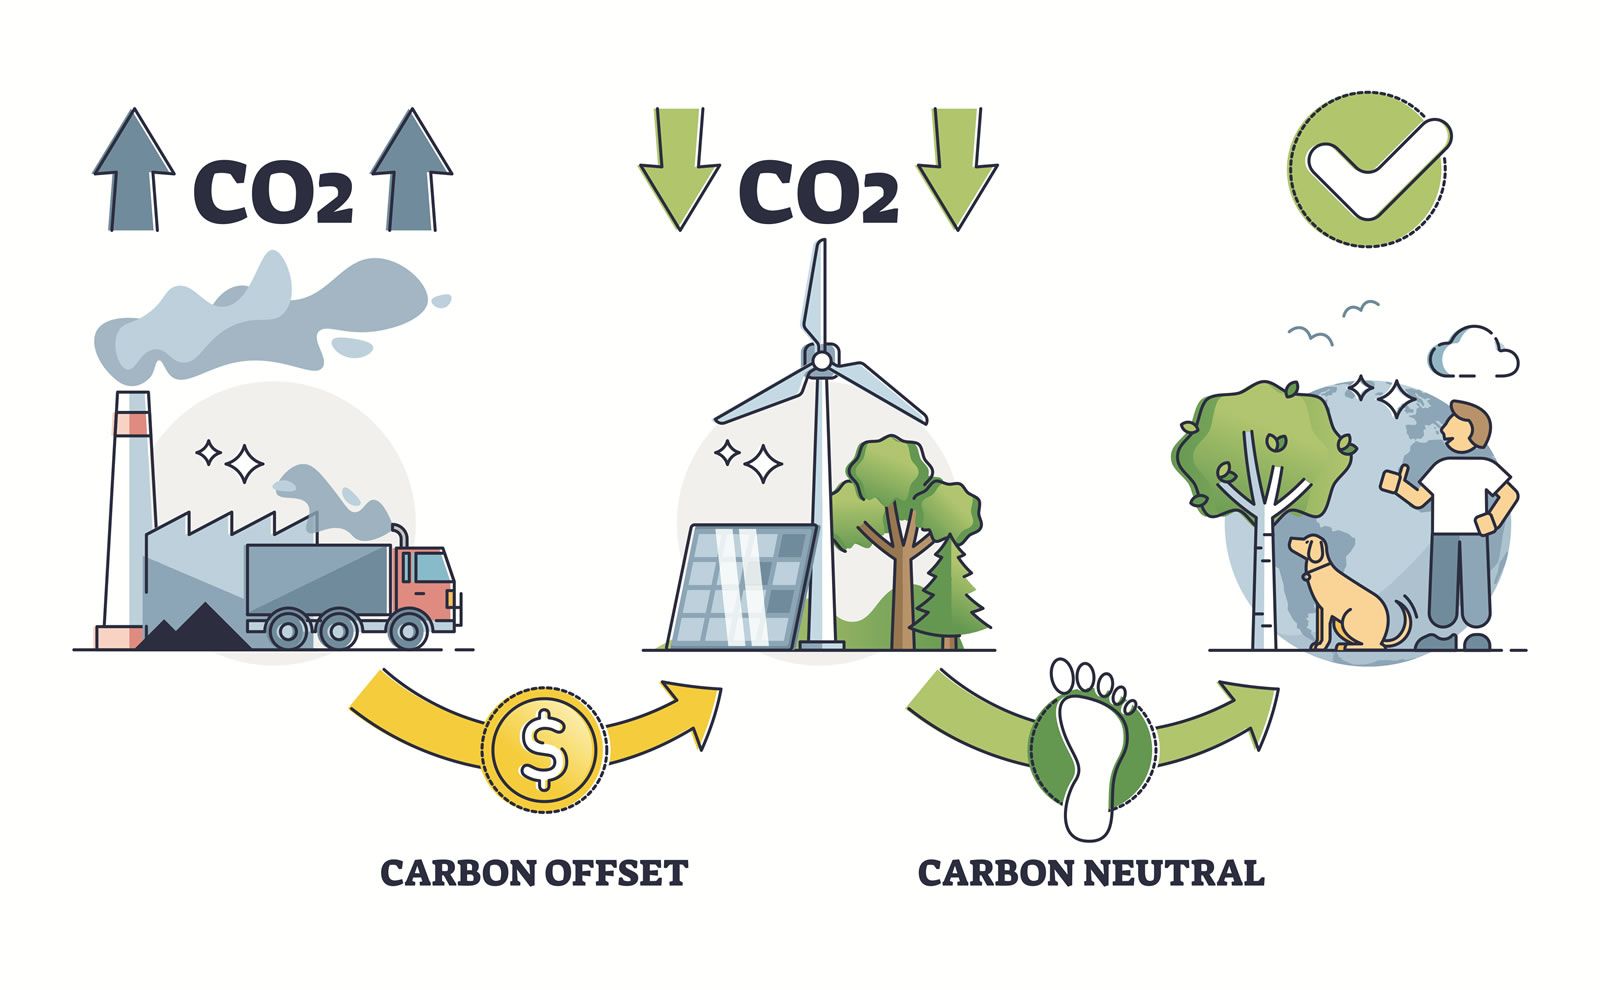 Carbon offset or carbon neutral